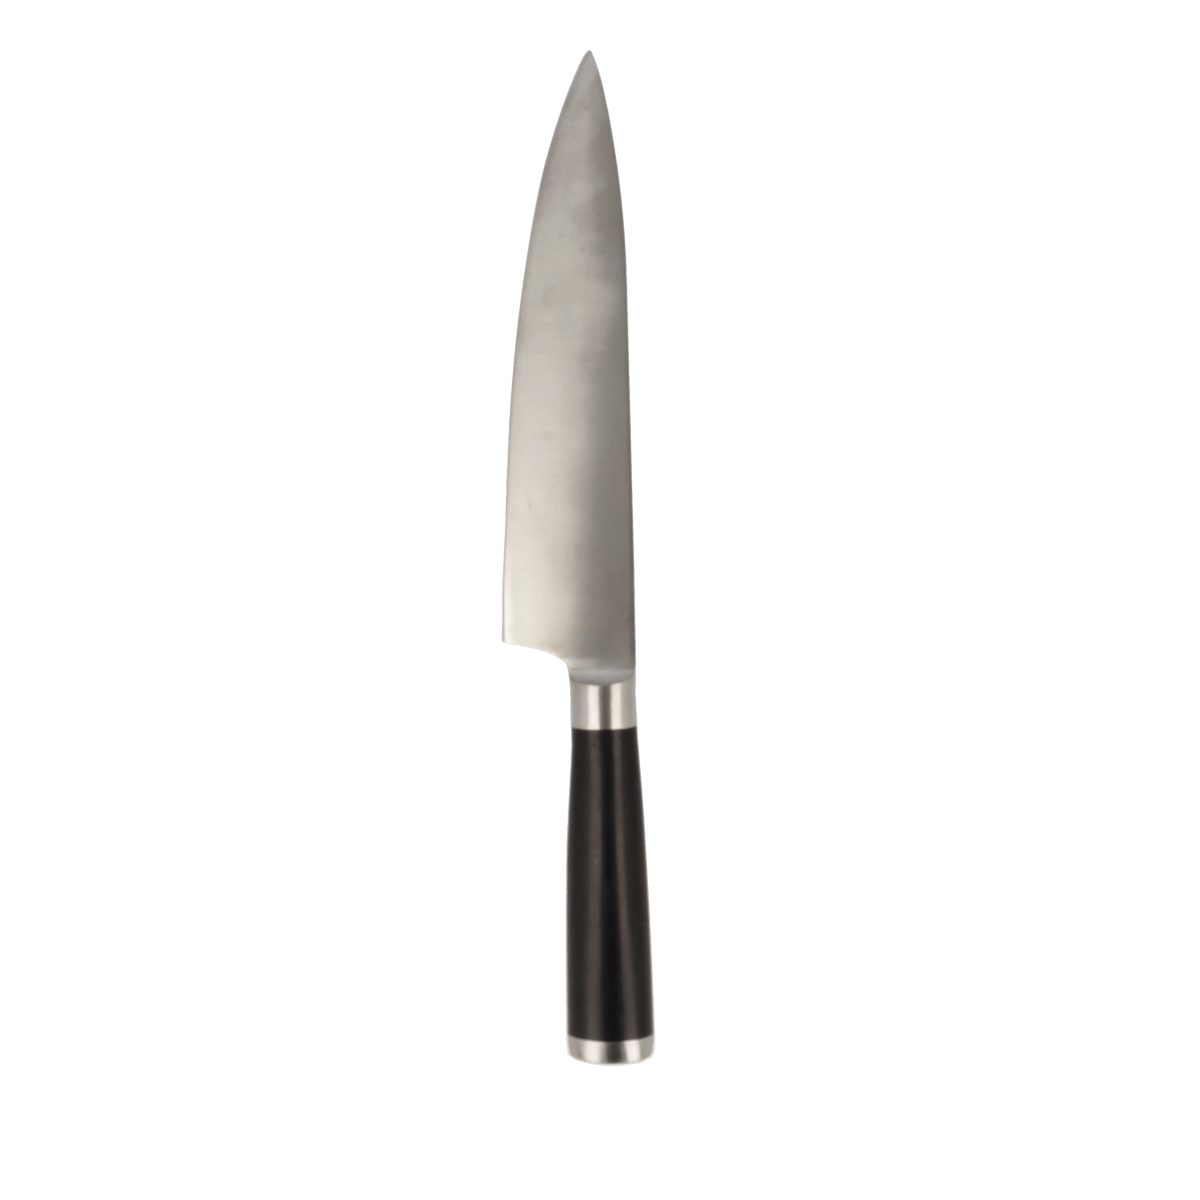 EUROHOME Universalmesser Edelstahl Schneidemesser scharf mit rutschfestem Kunststoffgriff, (Messer 32,5 cm lang), Universalmesser Küche - Edelstahlmesser scharf